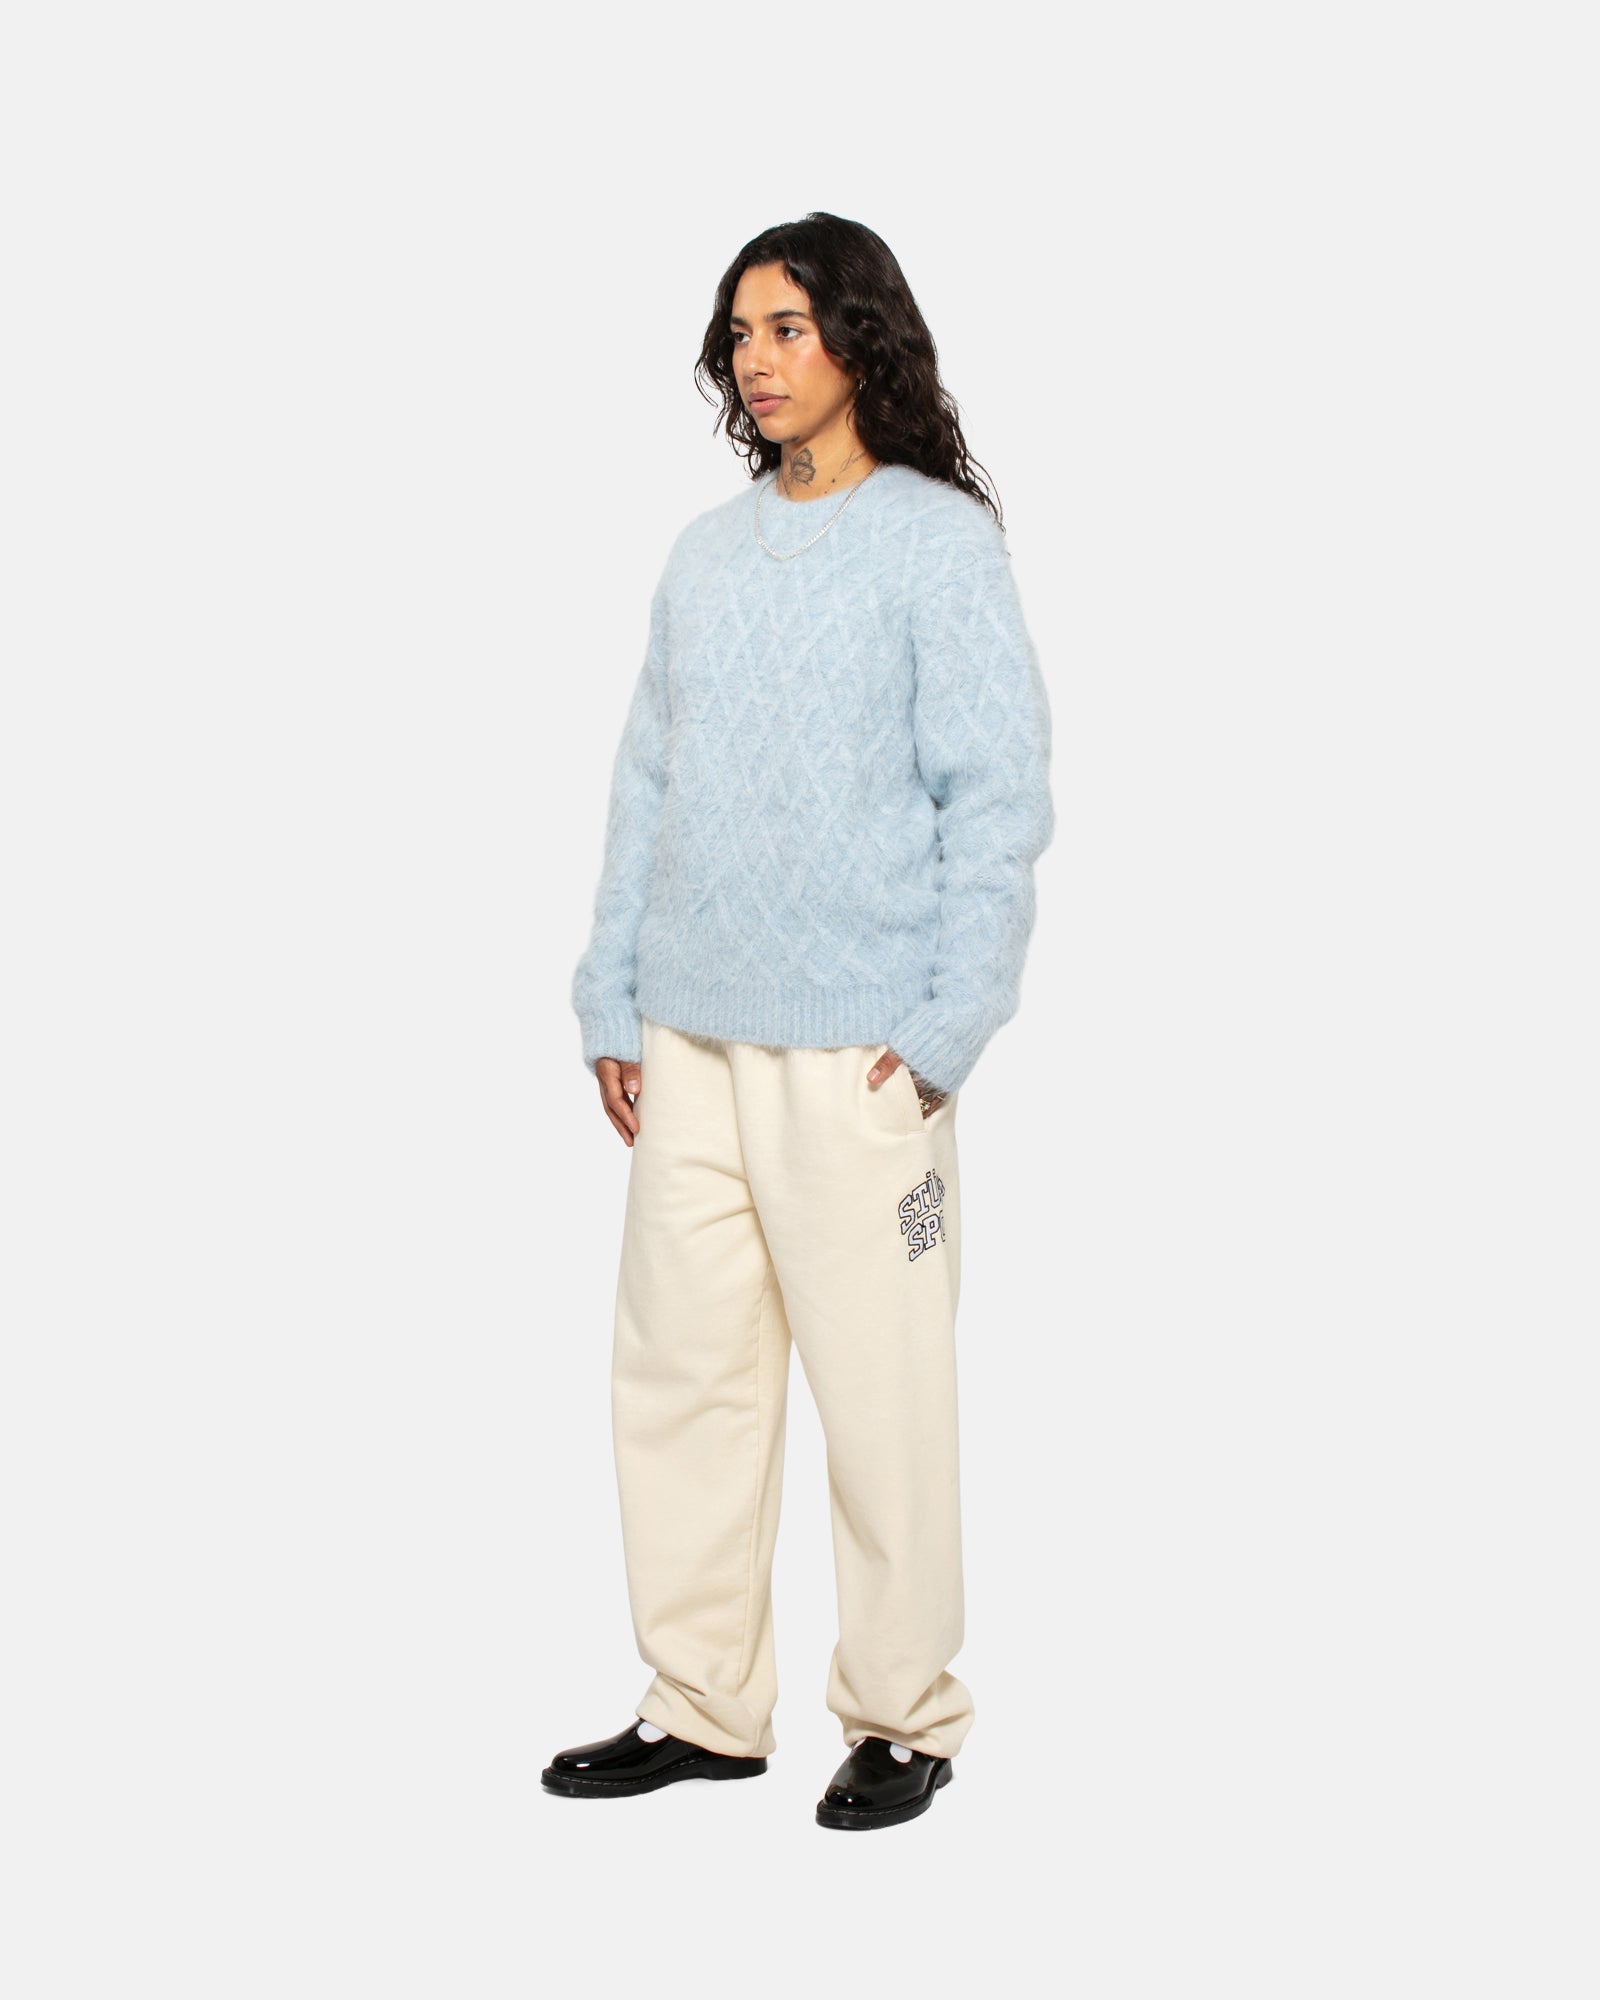 Fuzzy Lattice Crew Sweater - Unisex Sweaters & Knits | Stüssy